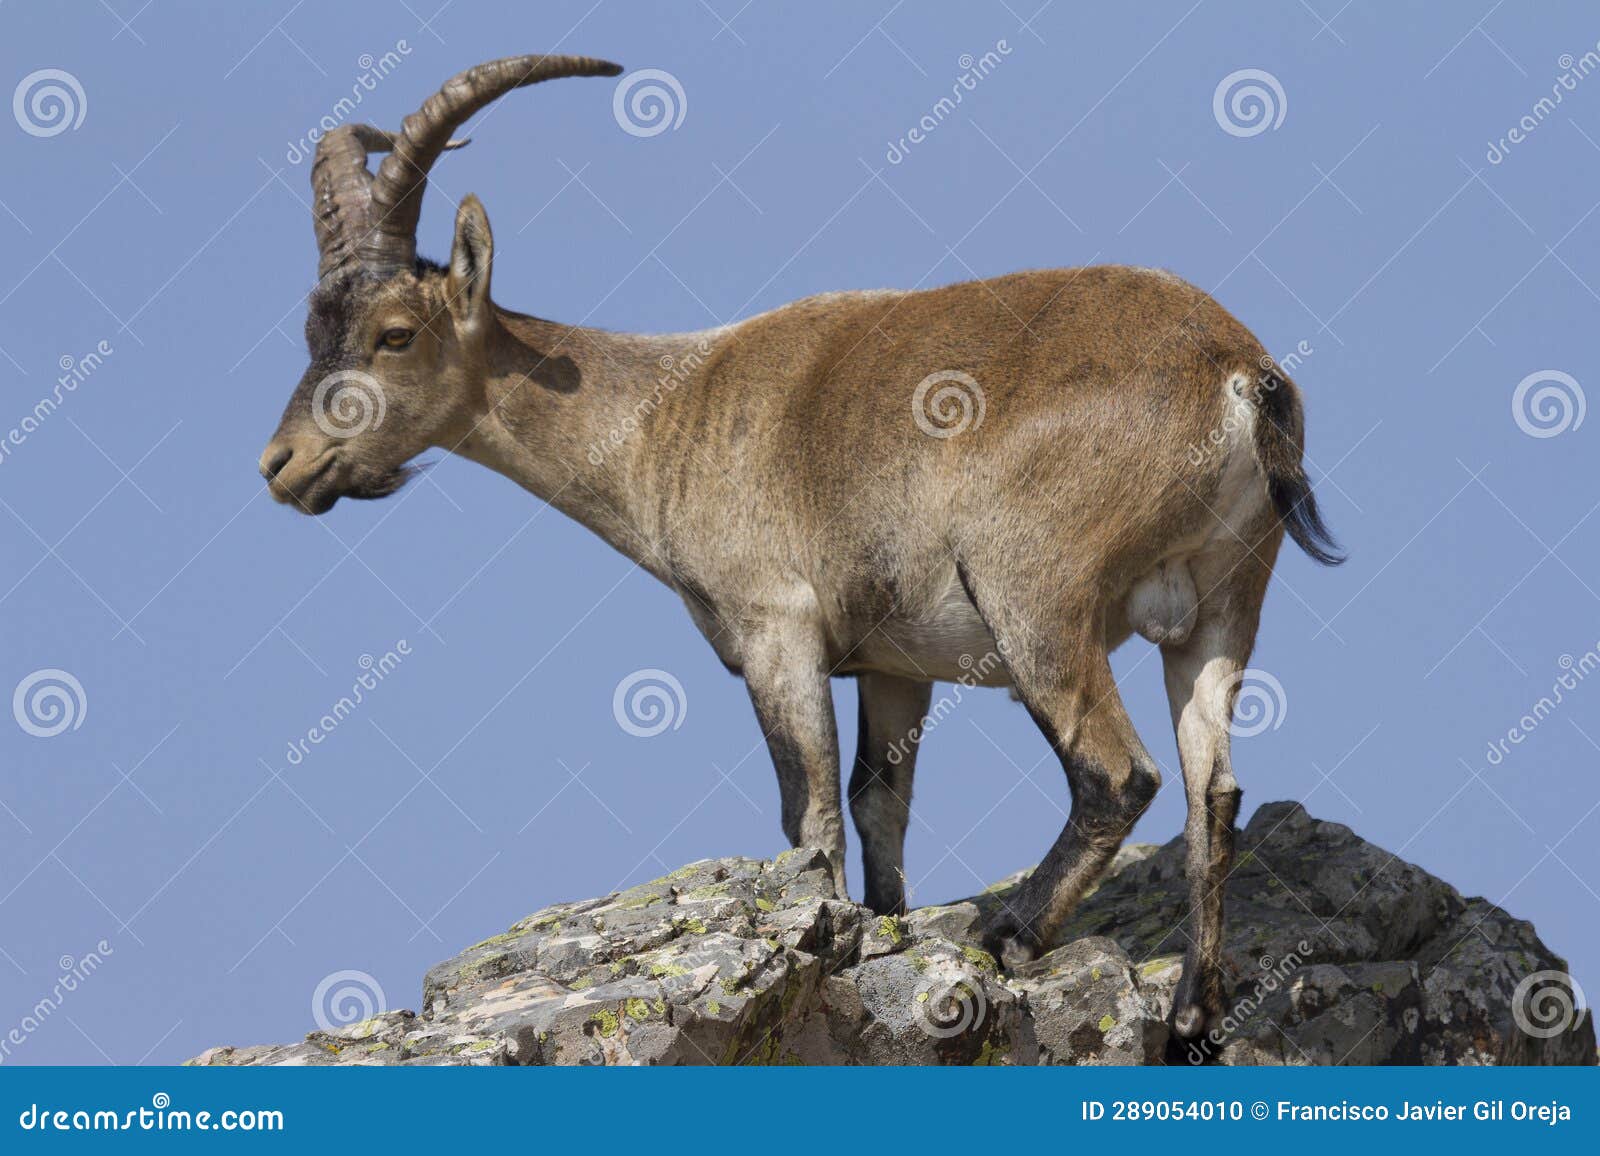 mountain goat, la pena de francia, salamanca